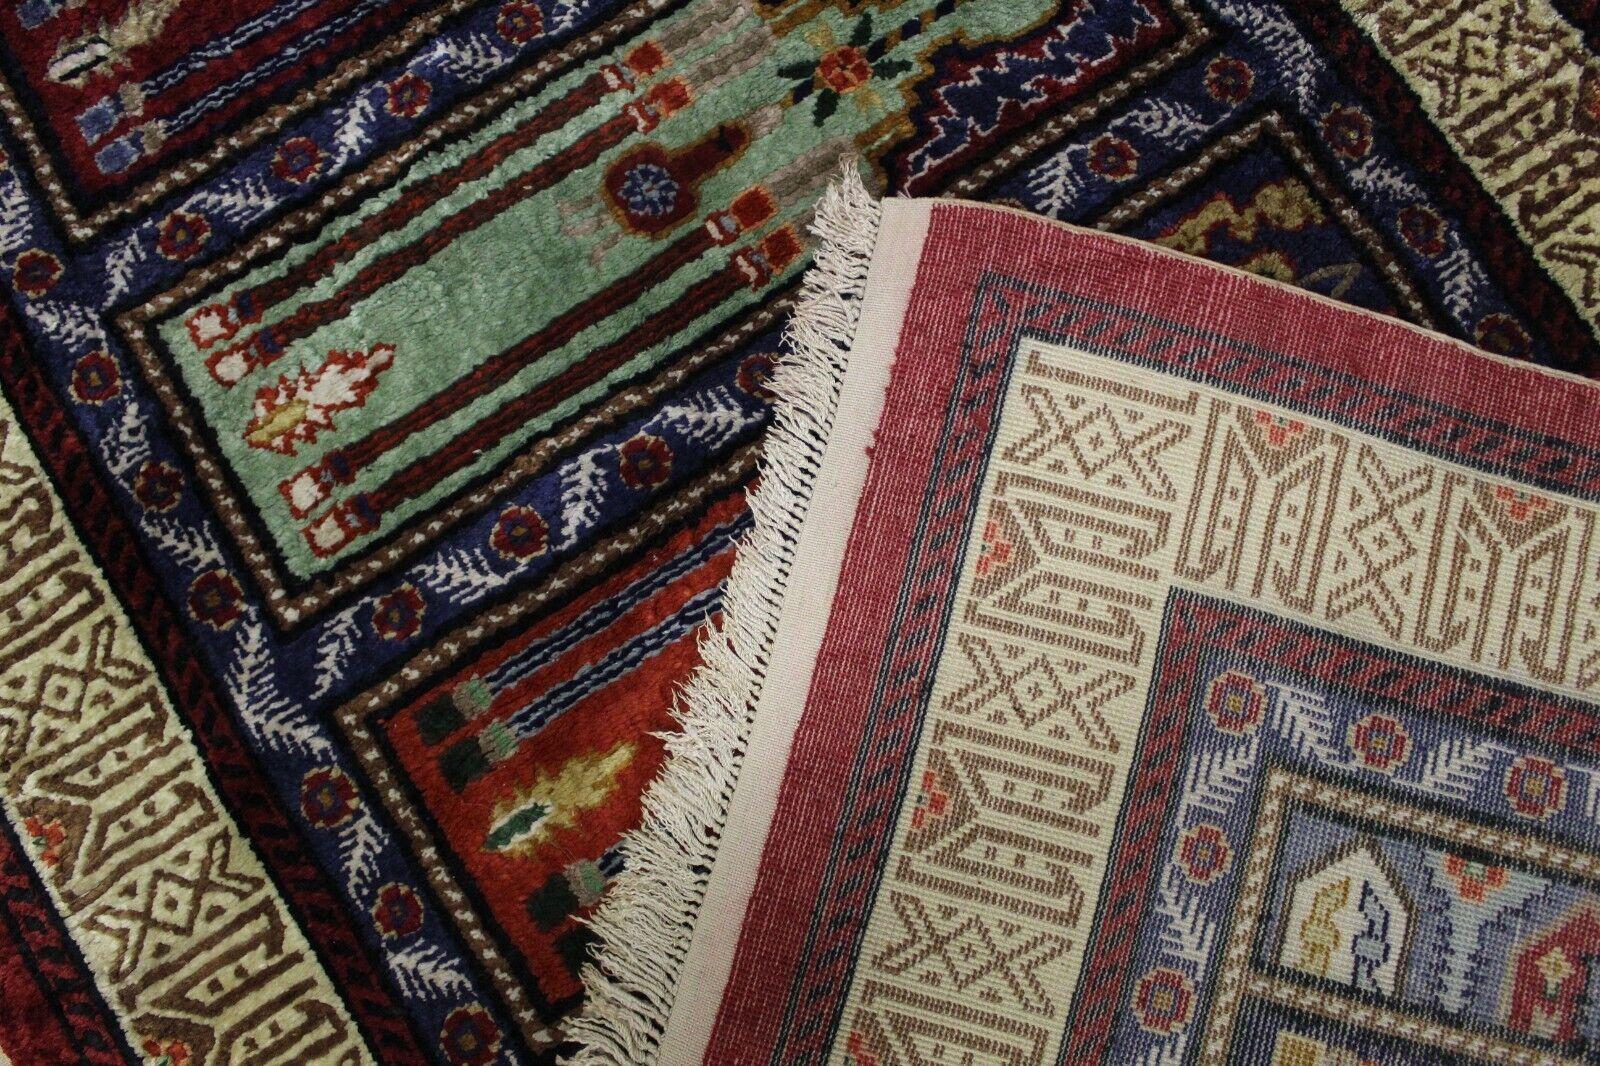 Werten Sie Ihre Einrichtung mit unserem handgefertigten türkischen Seidenteppich Vintage Keyseri aus den 1970er Jahren auf. Mit den Maßen 2,8' x 7' ist dieser Teppich ein Meisterwerk an Kunstfertigkeit und Handwerkskunst, das die komplizierte